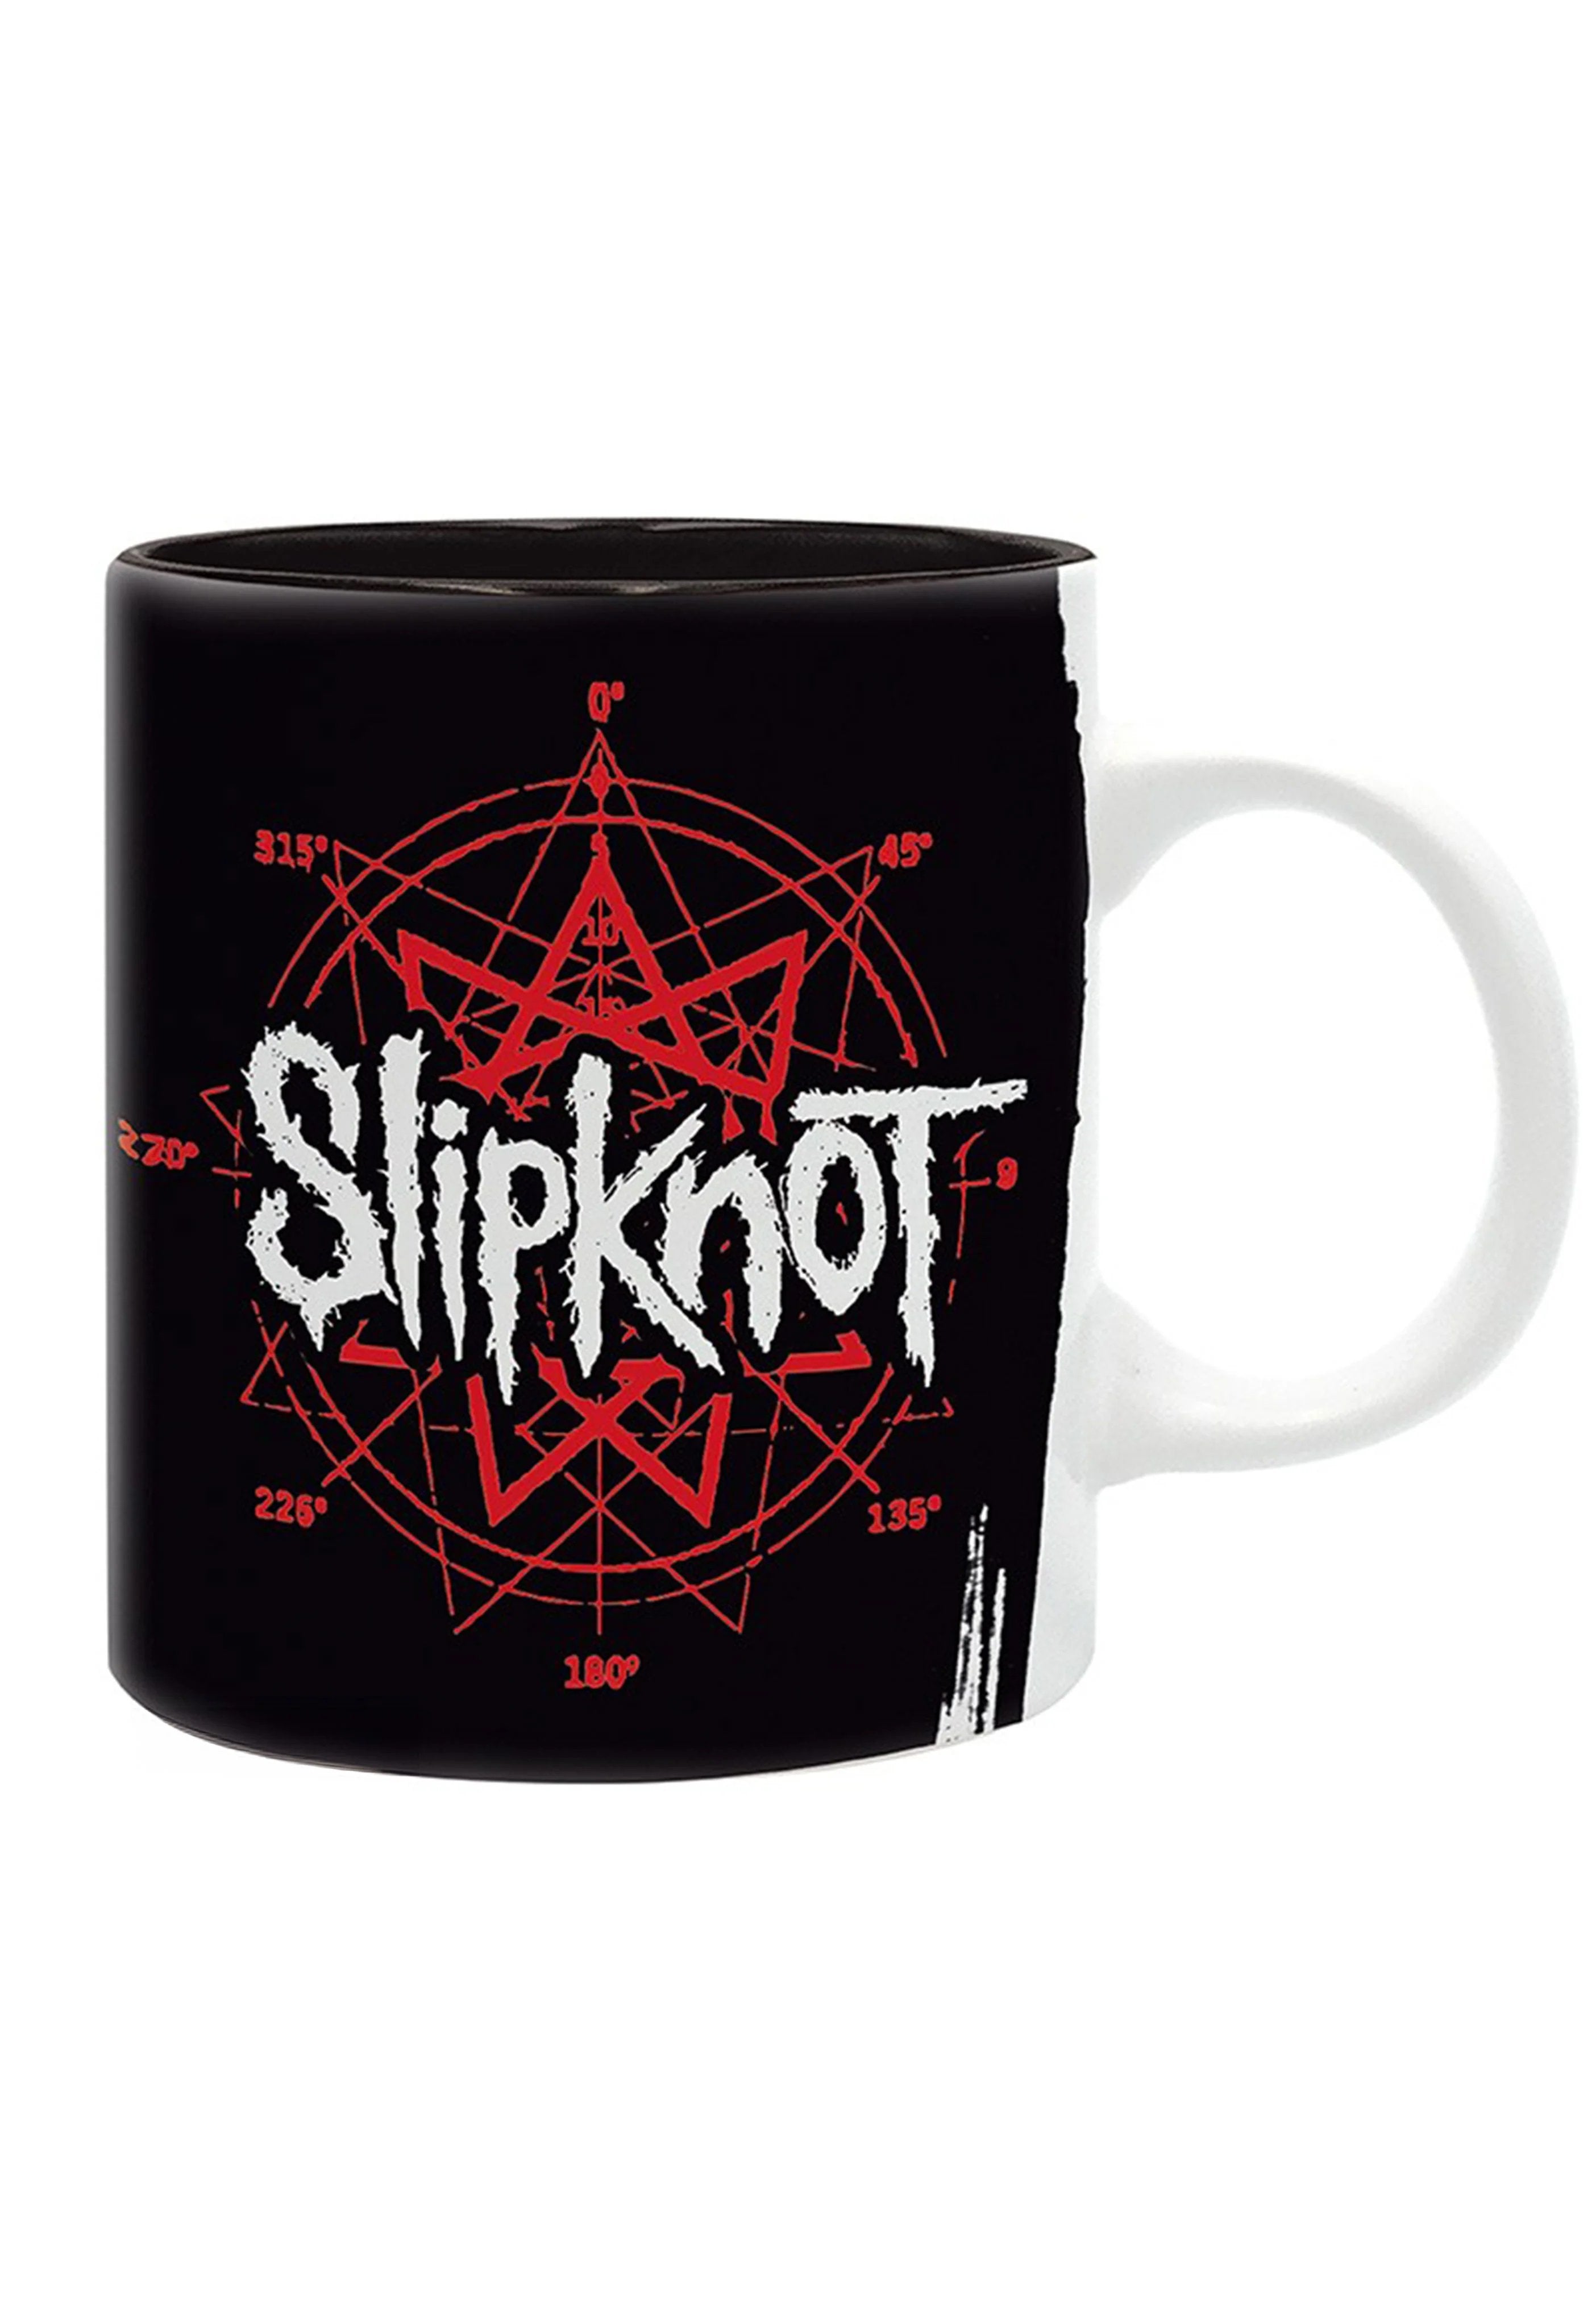 Slipknot - Goat - Mug